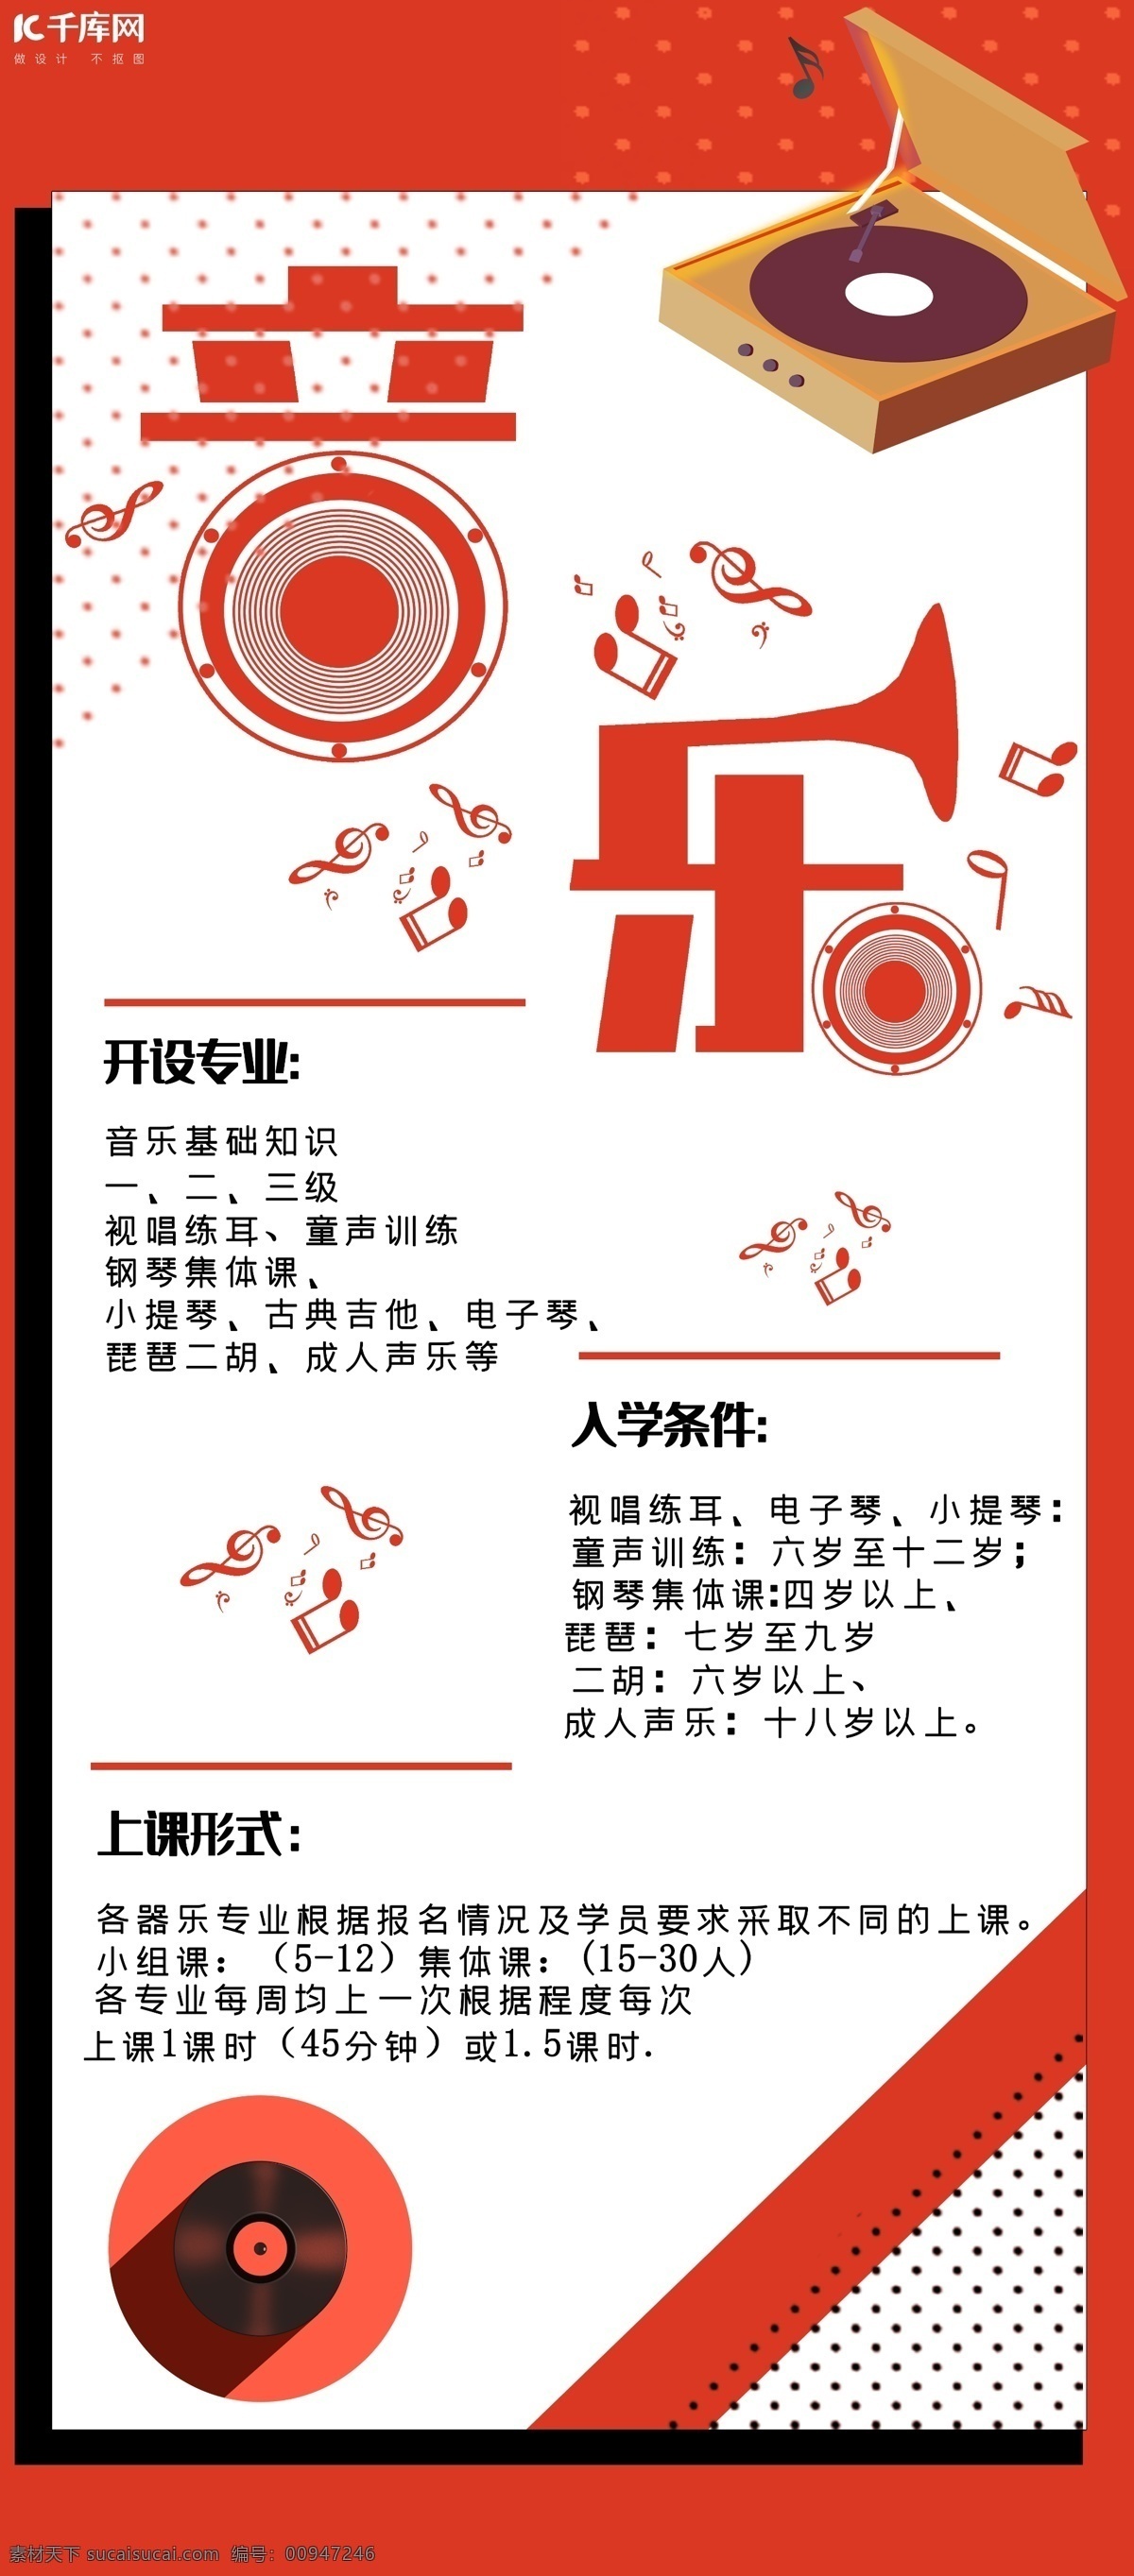 音乐 培训机构 宣传 大气 红色 x 展架 音乐培训 机构 x展架 易拉宝 培训